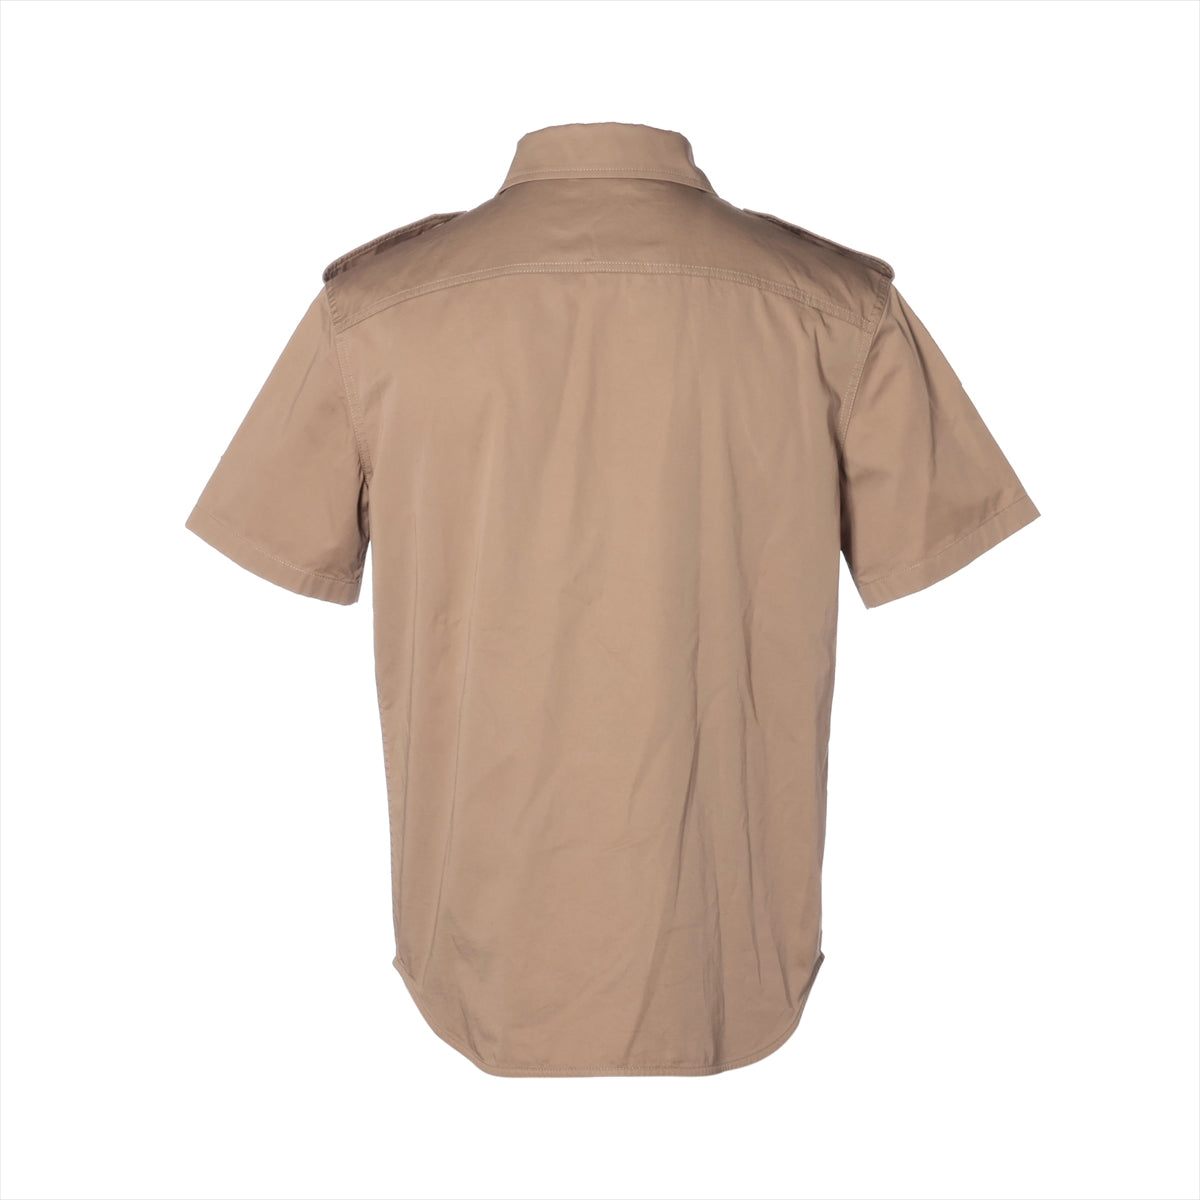 Celine Cotton & linen Shirt 38 Men's Khaki  velcro detail short sleeve open collar shirt 2C881219I